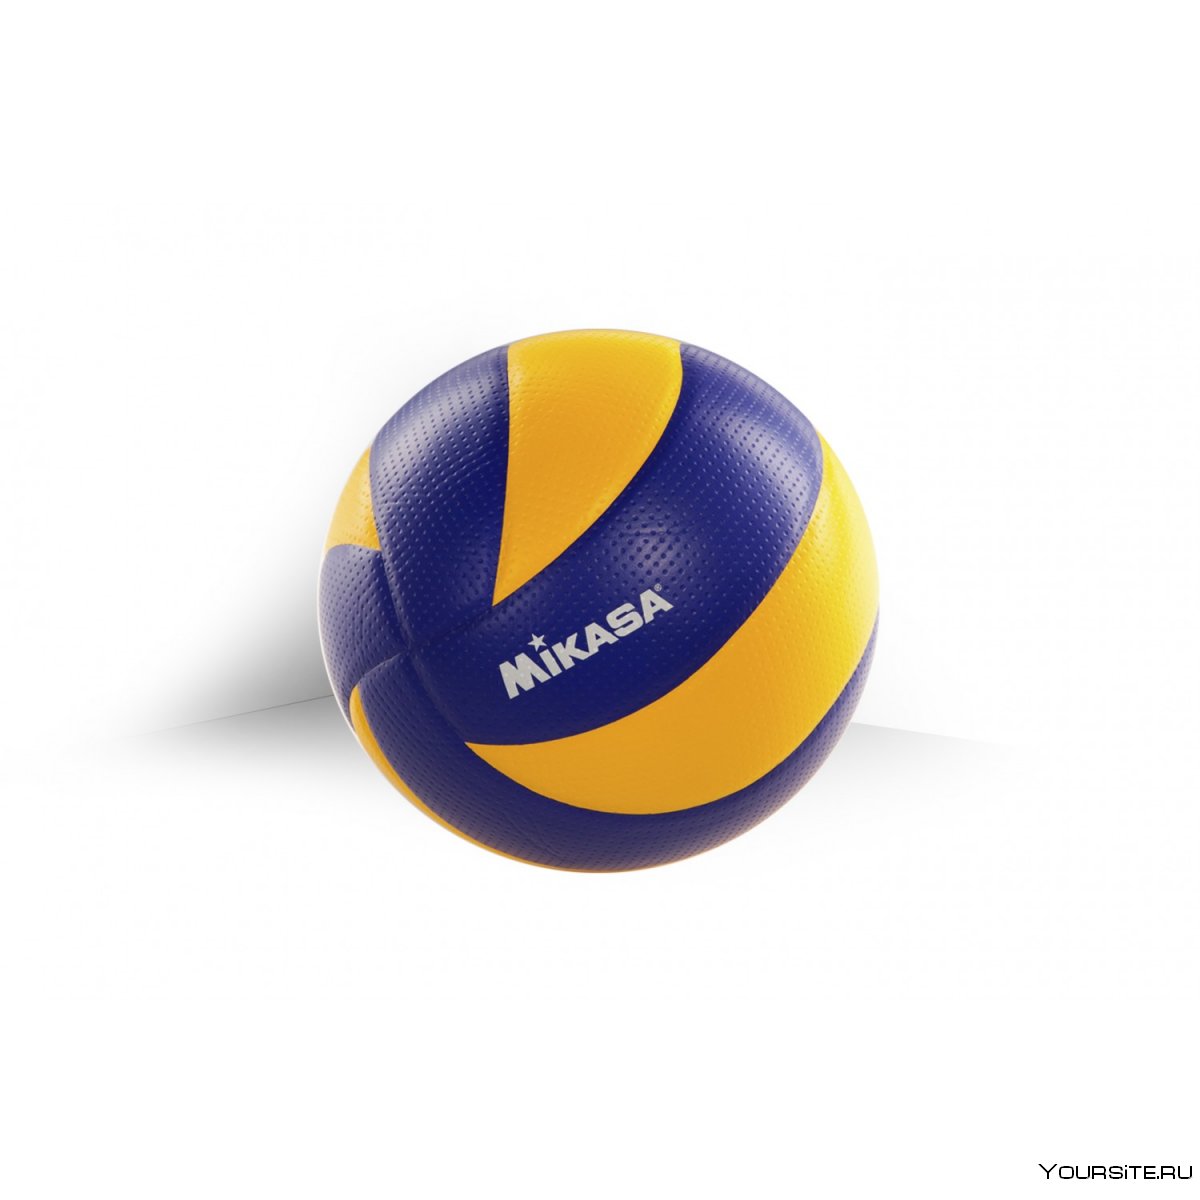 Волейбольный мяч Mikasa mva200 оригинал